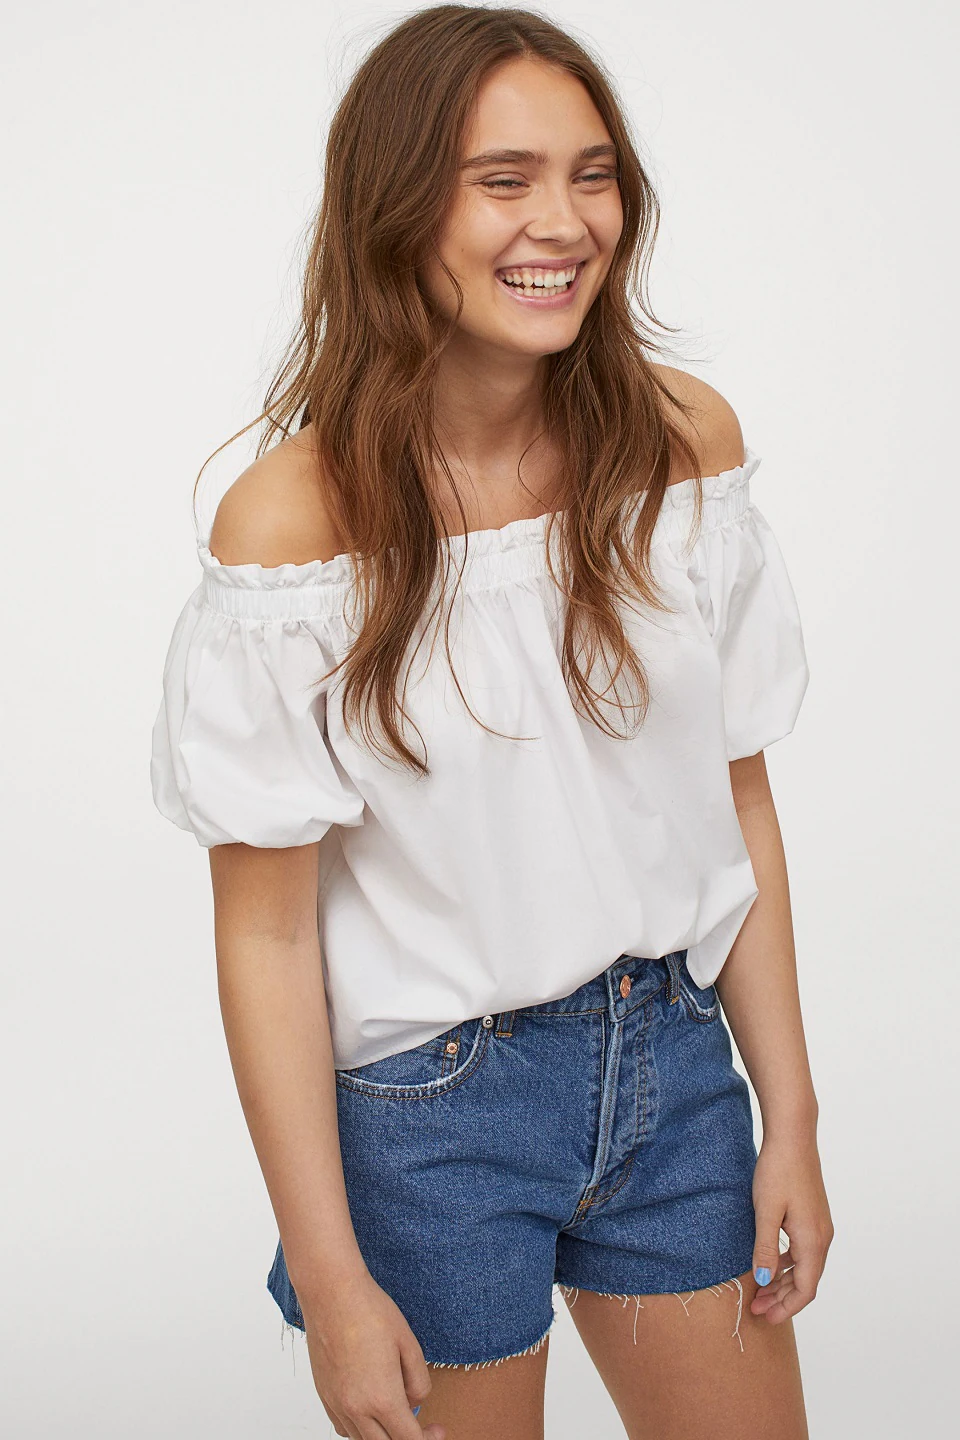 Fotos: Las blusas blancas de la nueva colección de H&M un flechazo y sientan de maravilla a cualquier edad | Mujer Hoy